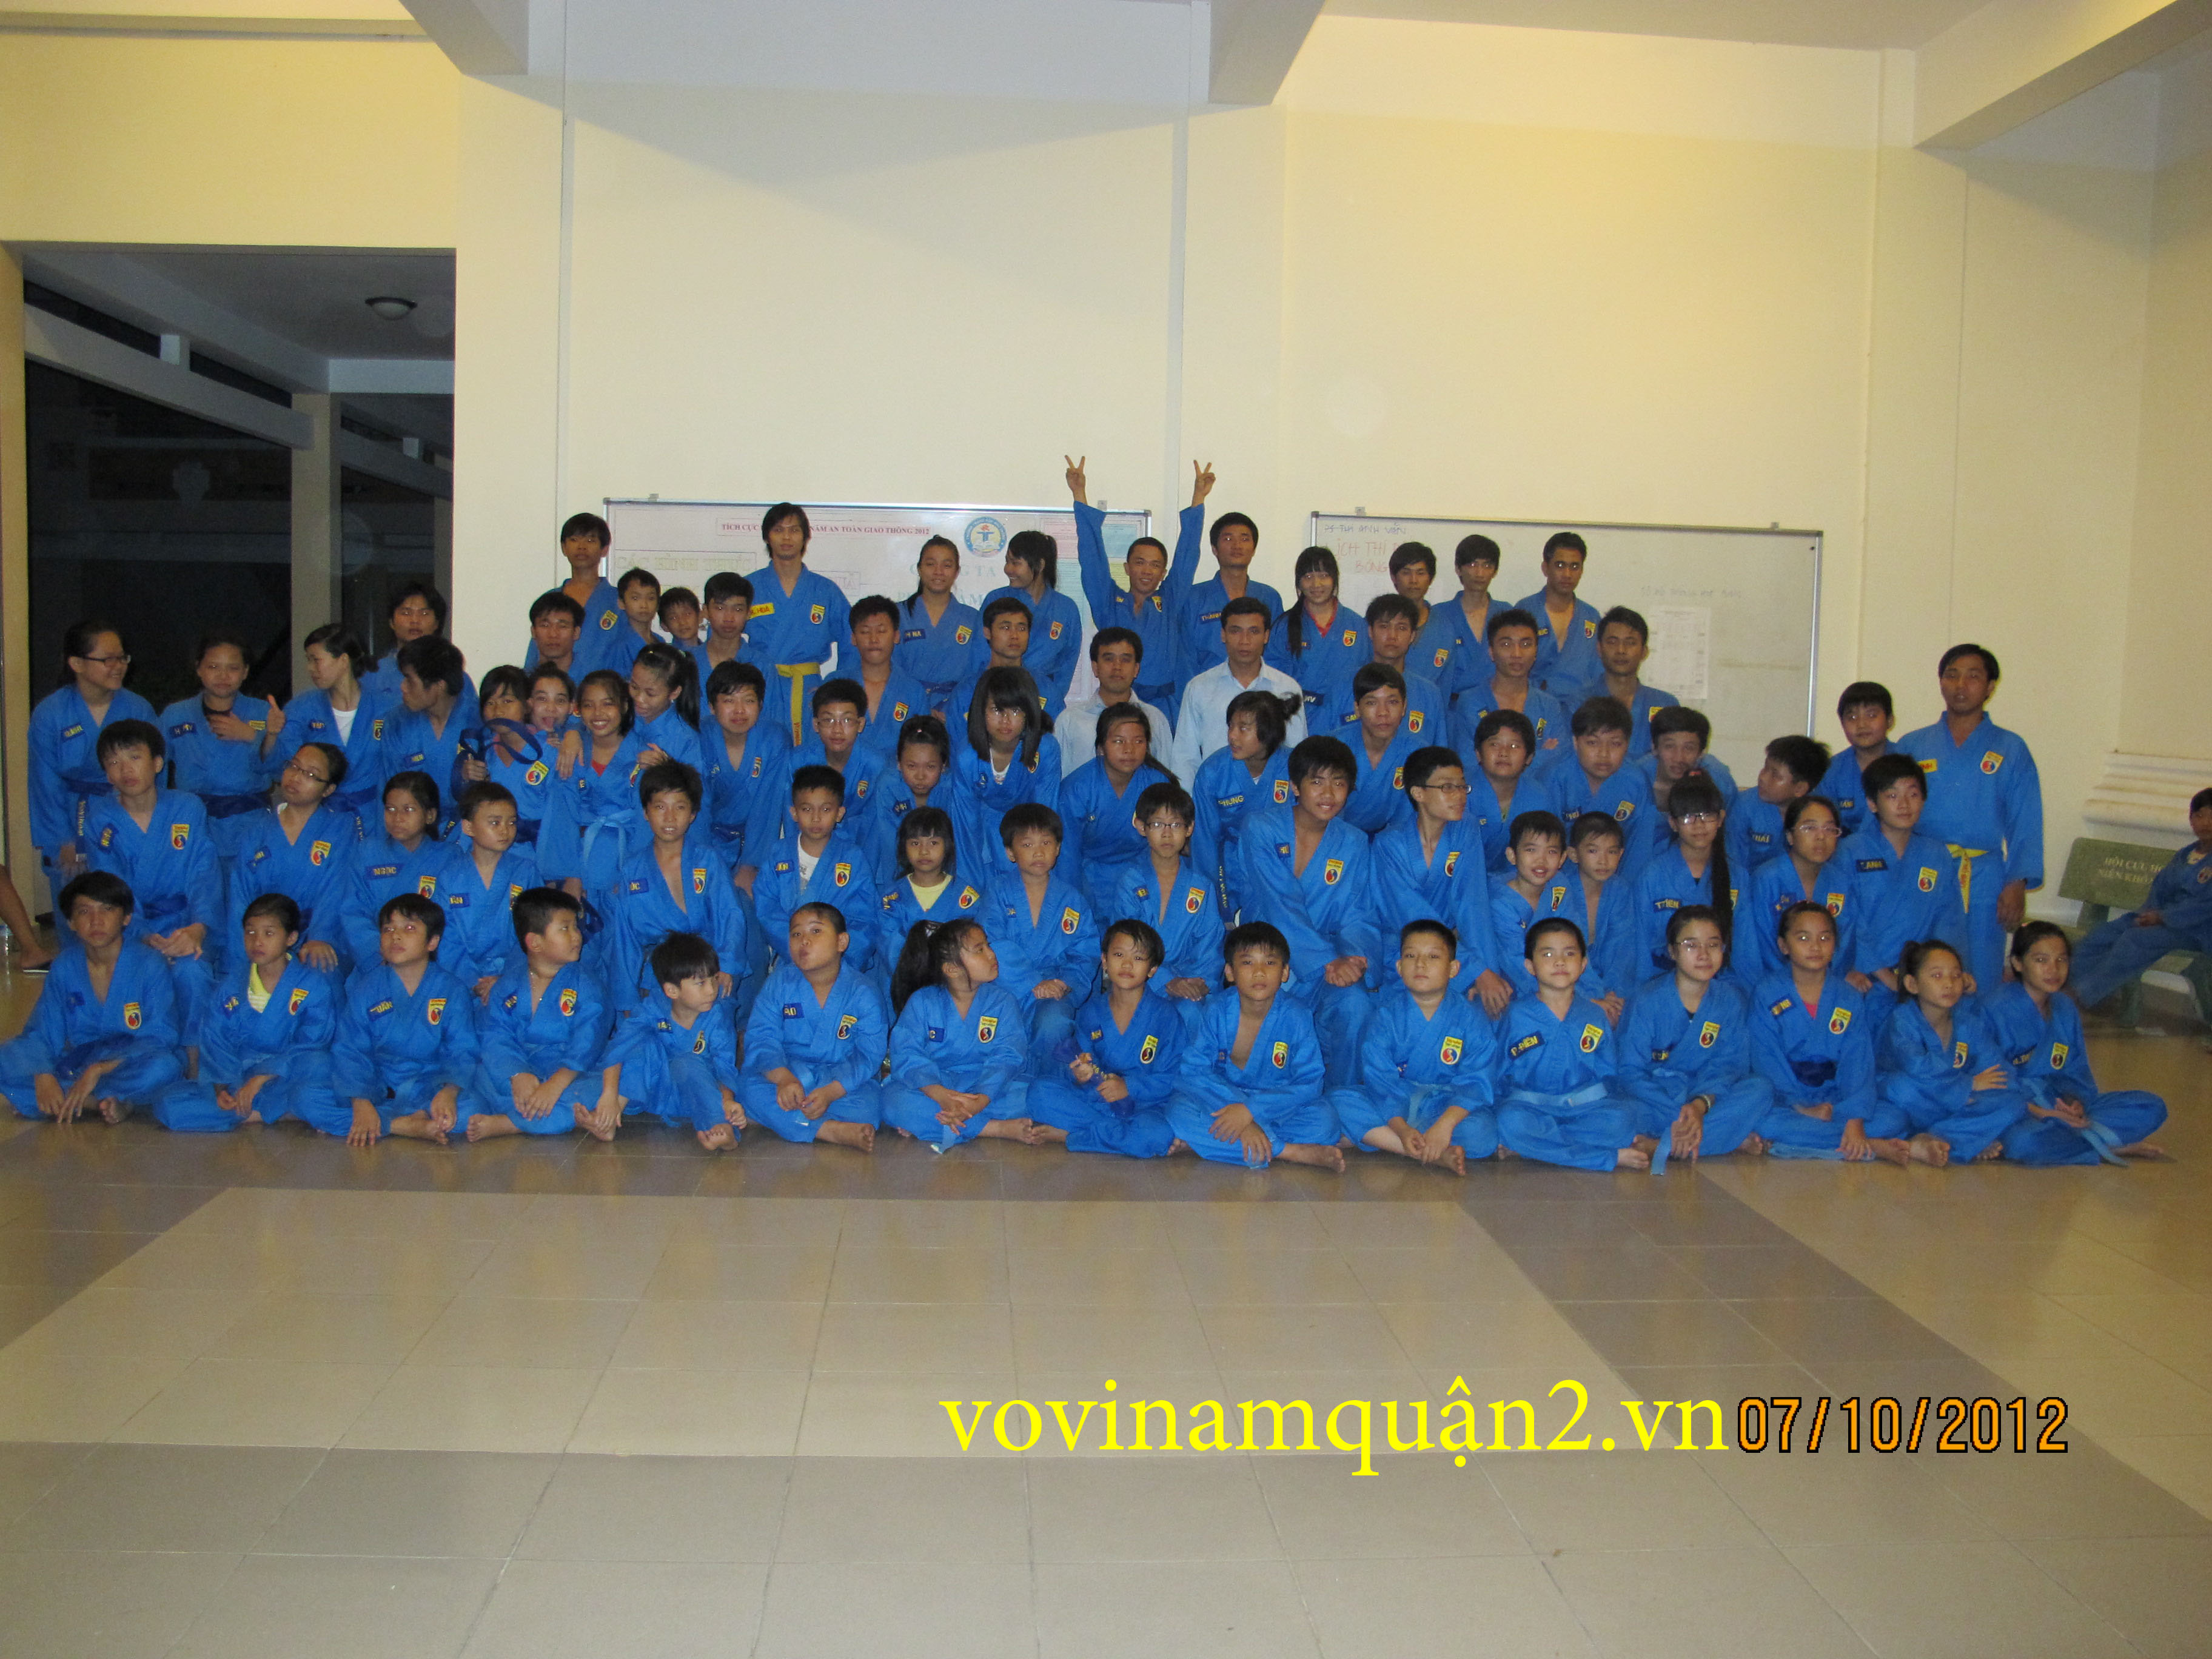 CLB Vovinam - Quận 2, HCM, Vietnam - Nhà thiếu nhi